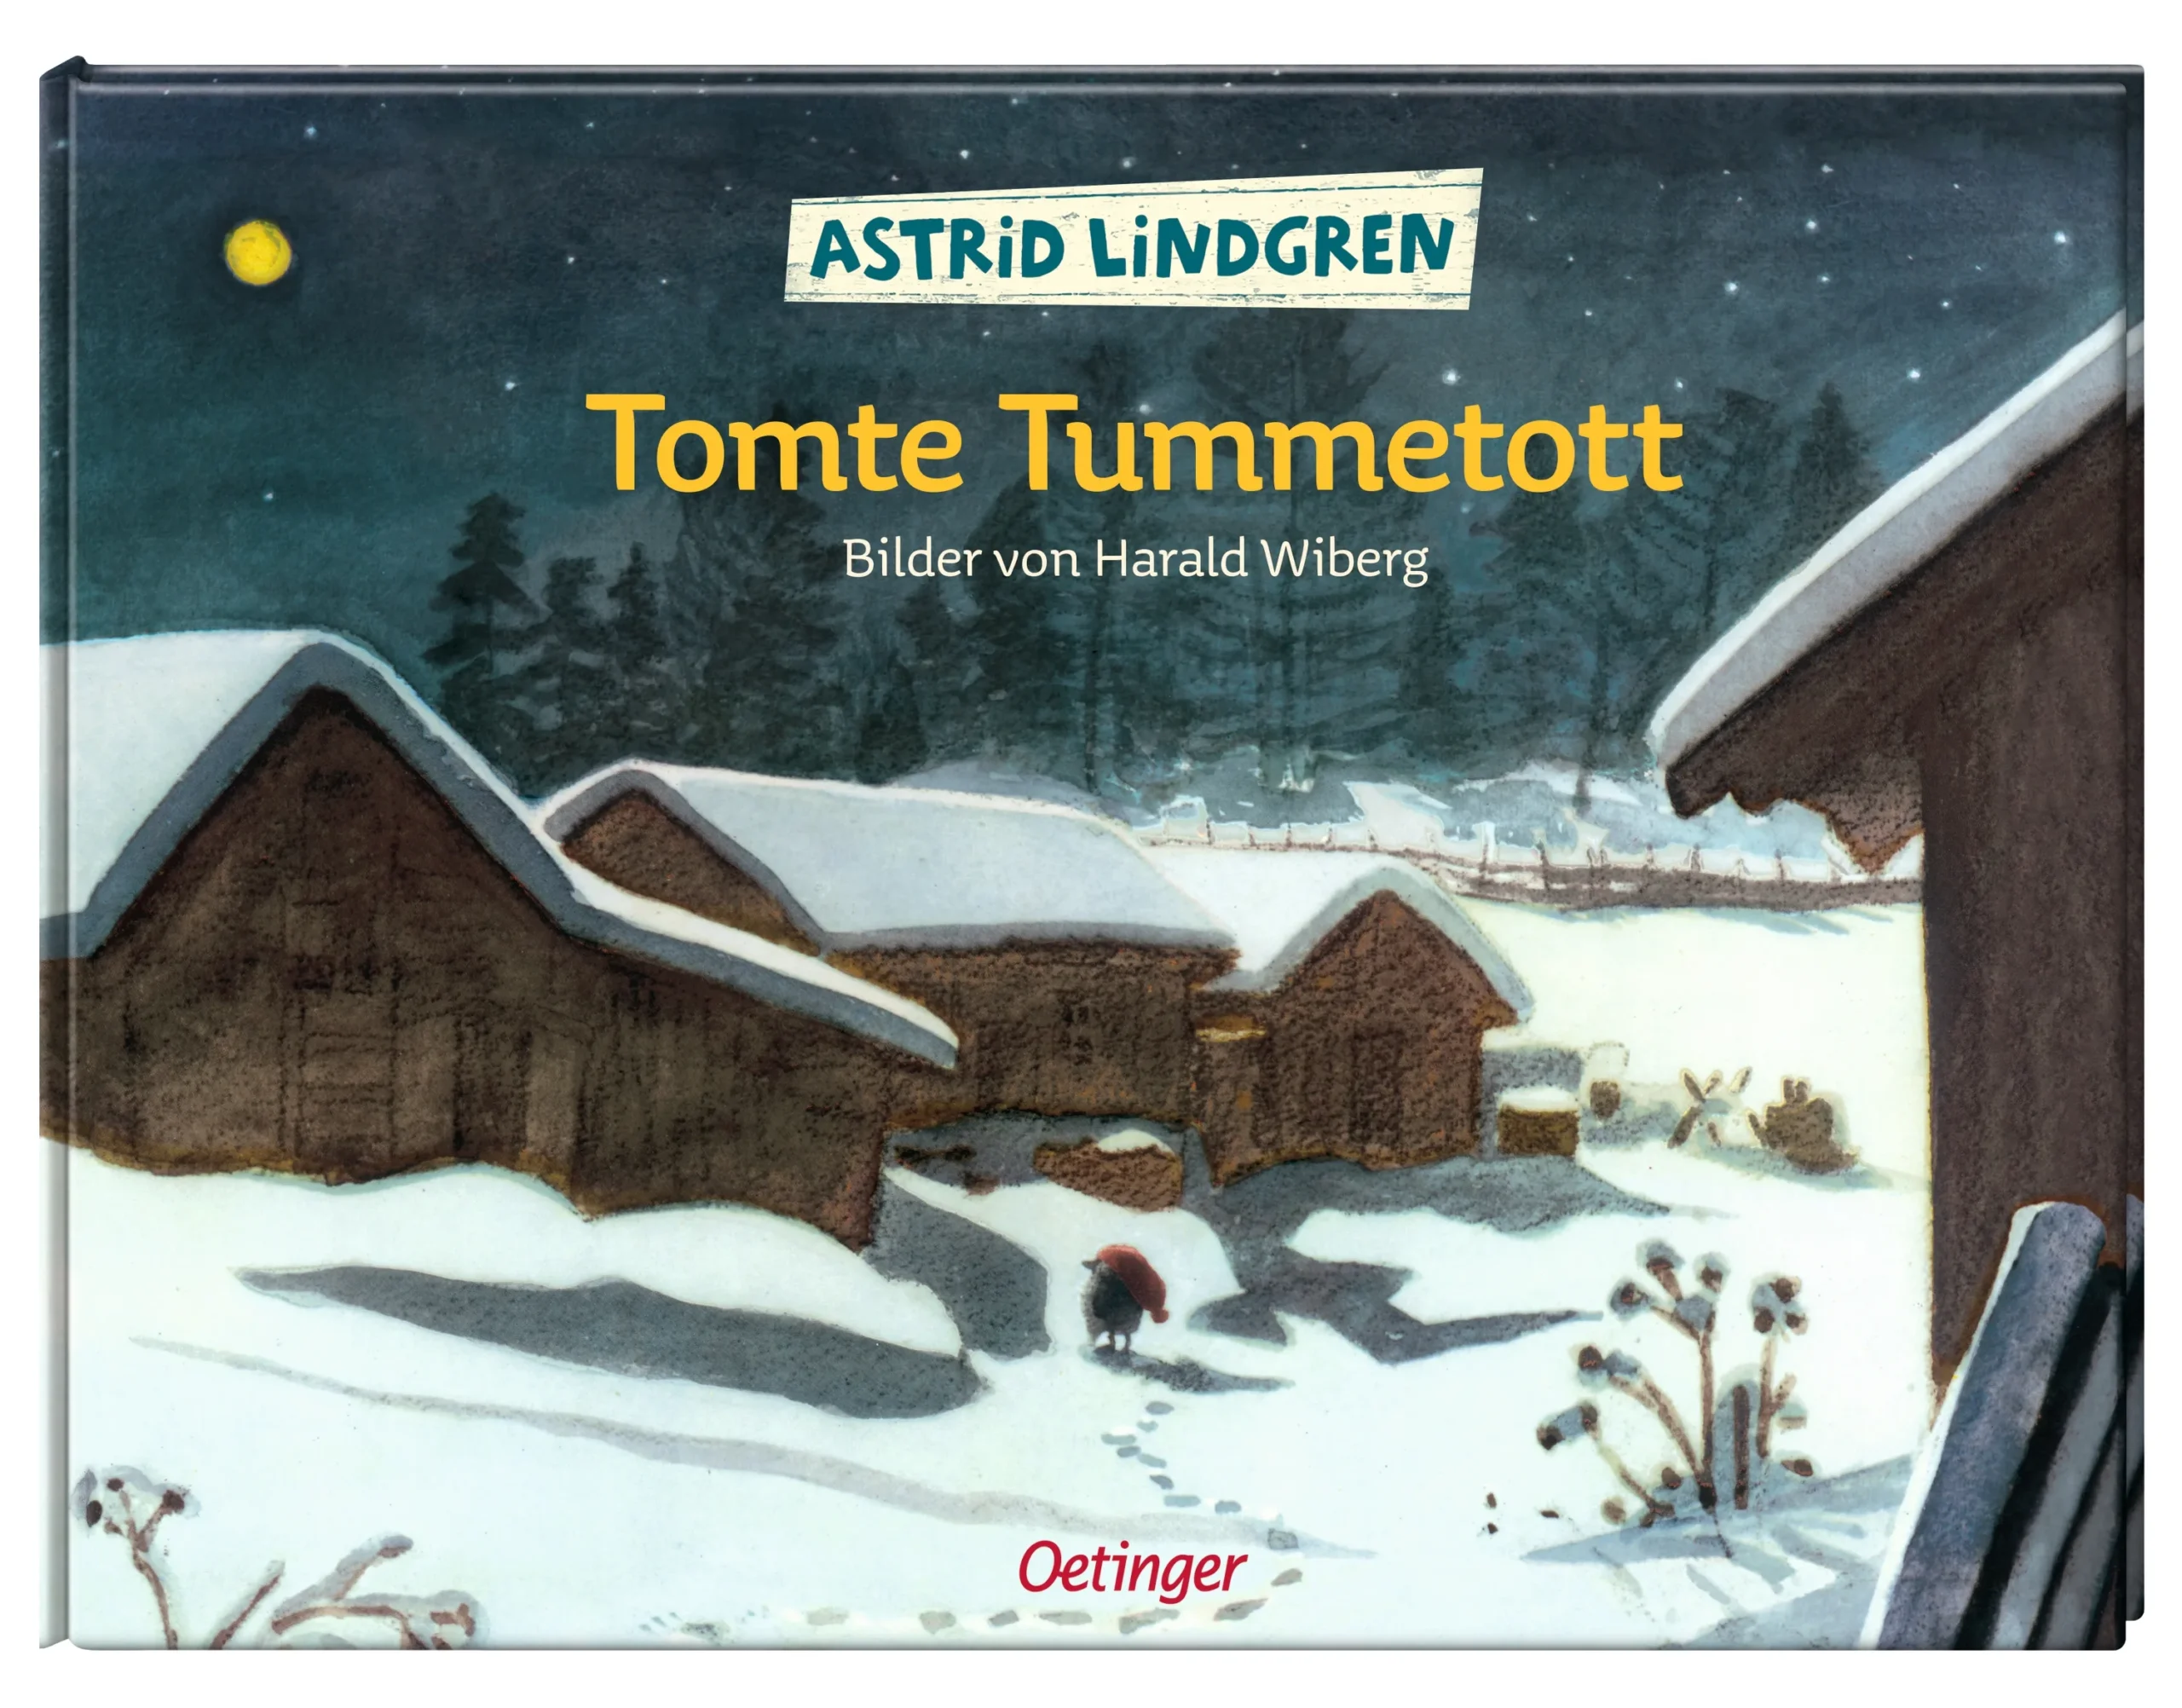 Tomte Tummettot von Astrid Lindgren ist ein skandinavischer Kinderbuch-Klassiker.